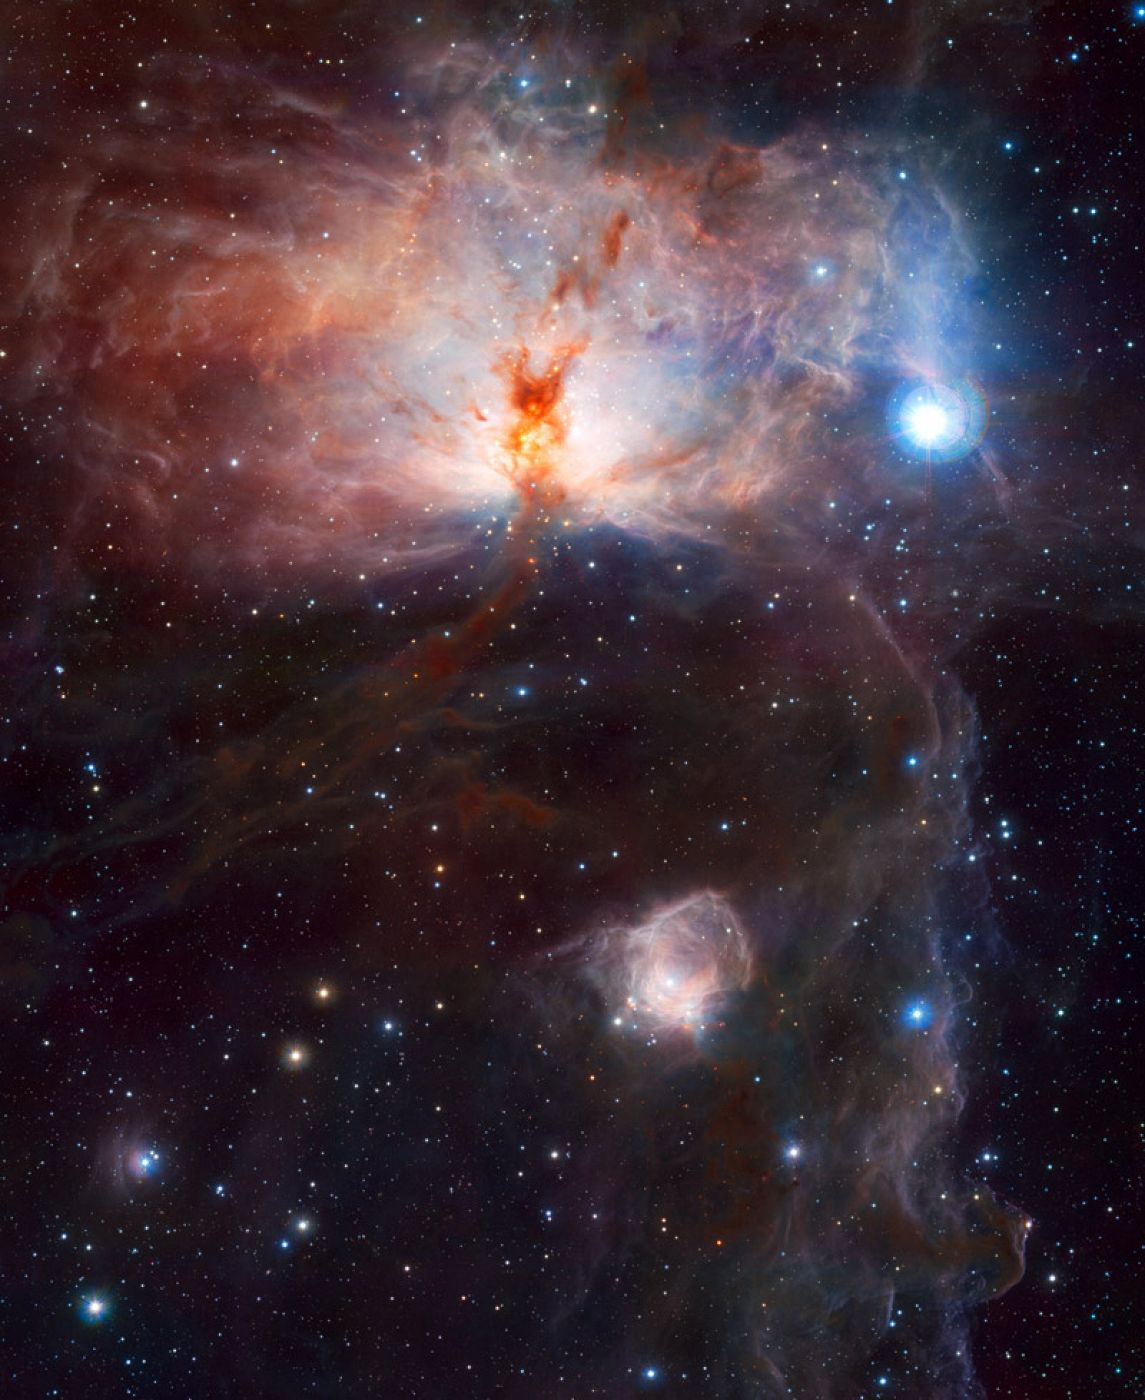 La primera imagen del nuevo telescopio europeo VISTA ha sido esta espectacular fotografía de la Nebulosa de la Llama.